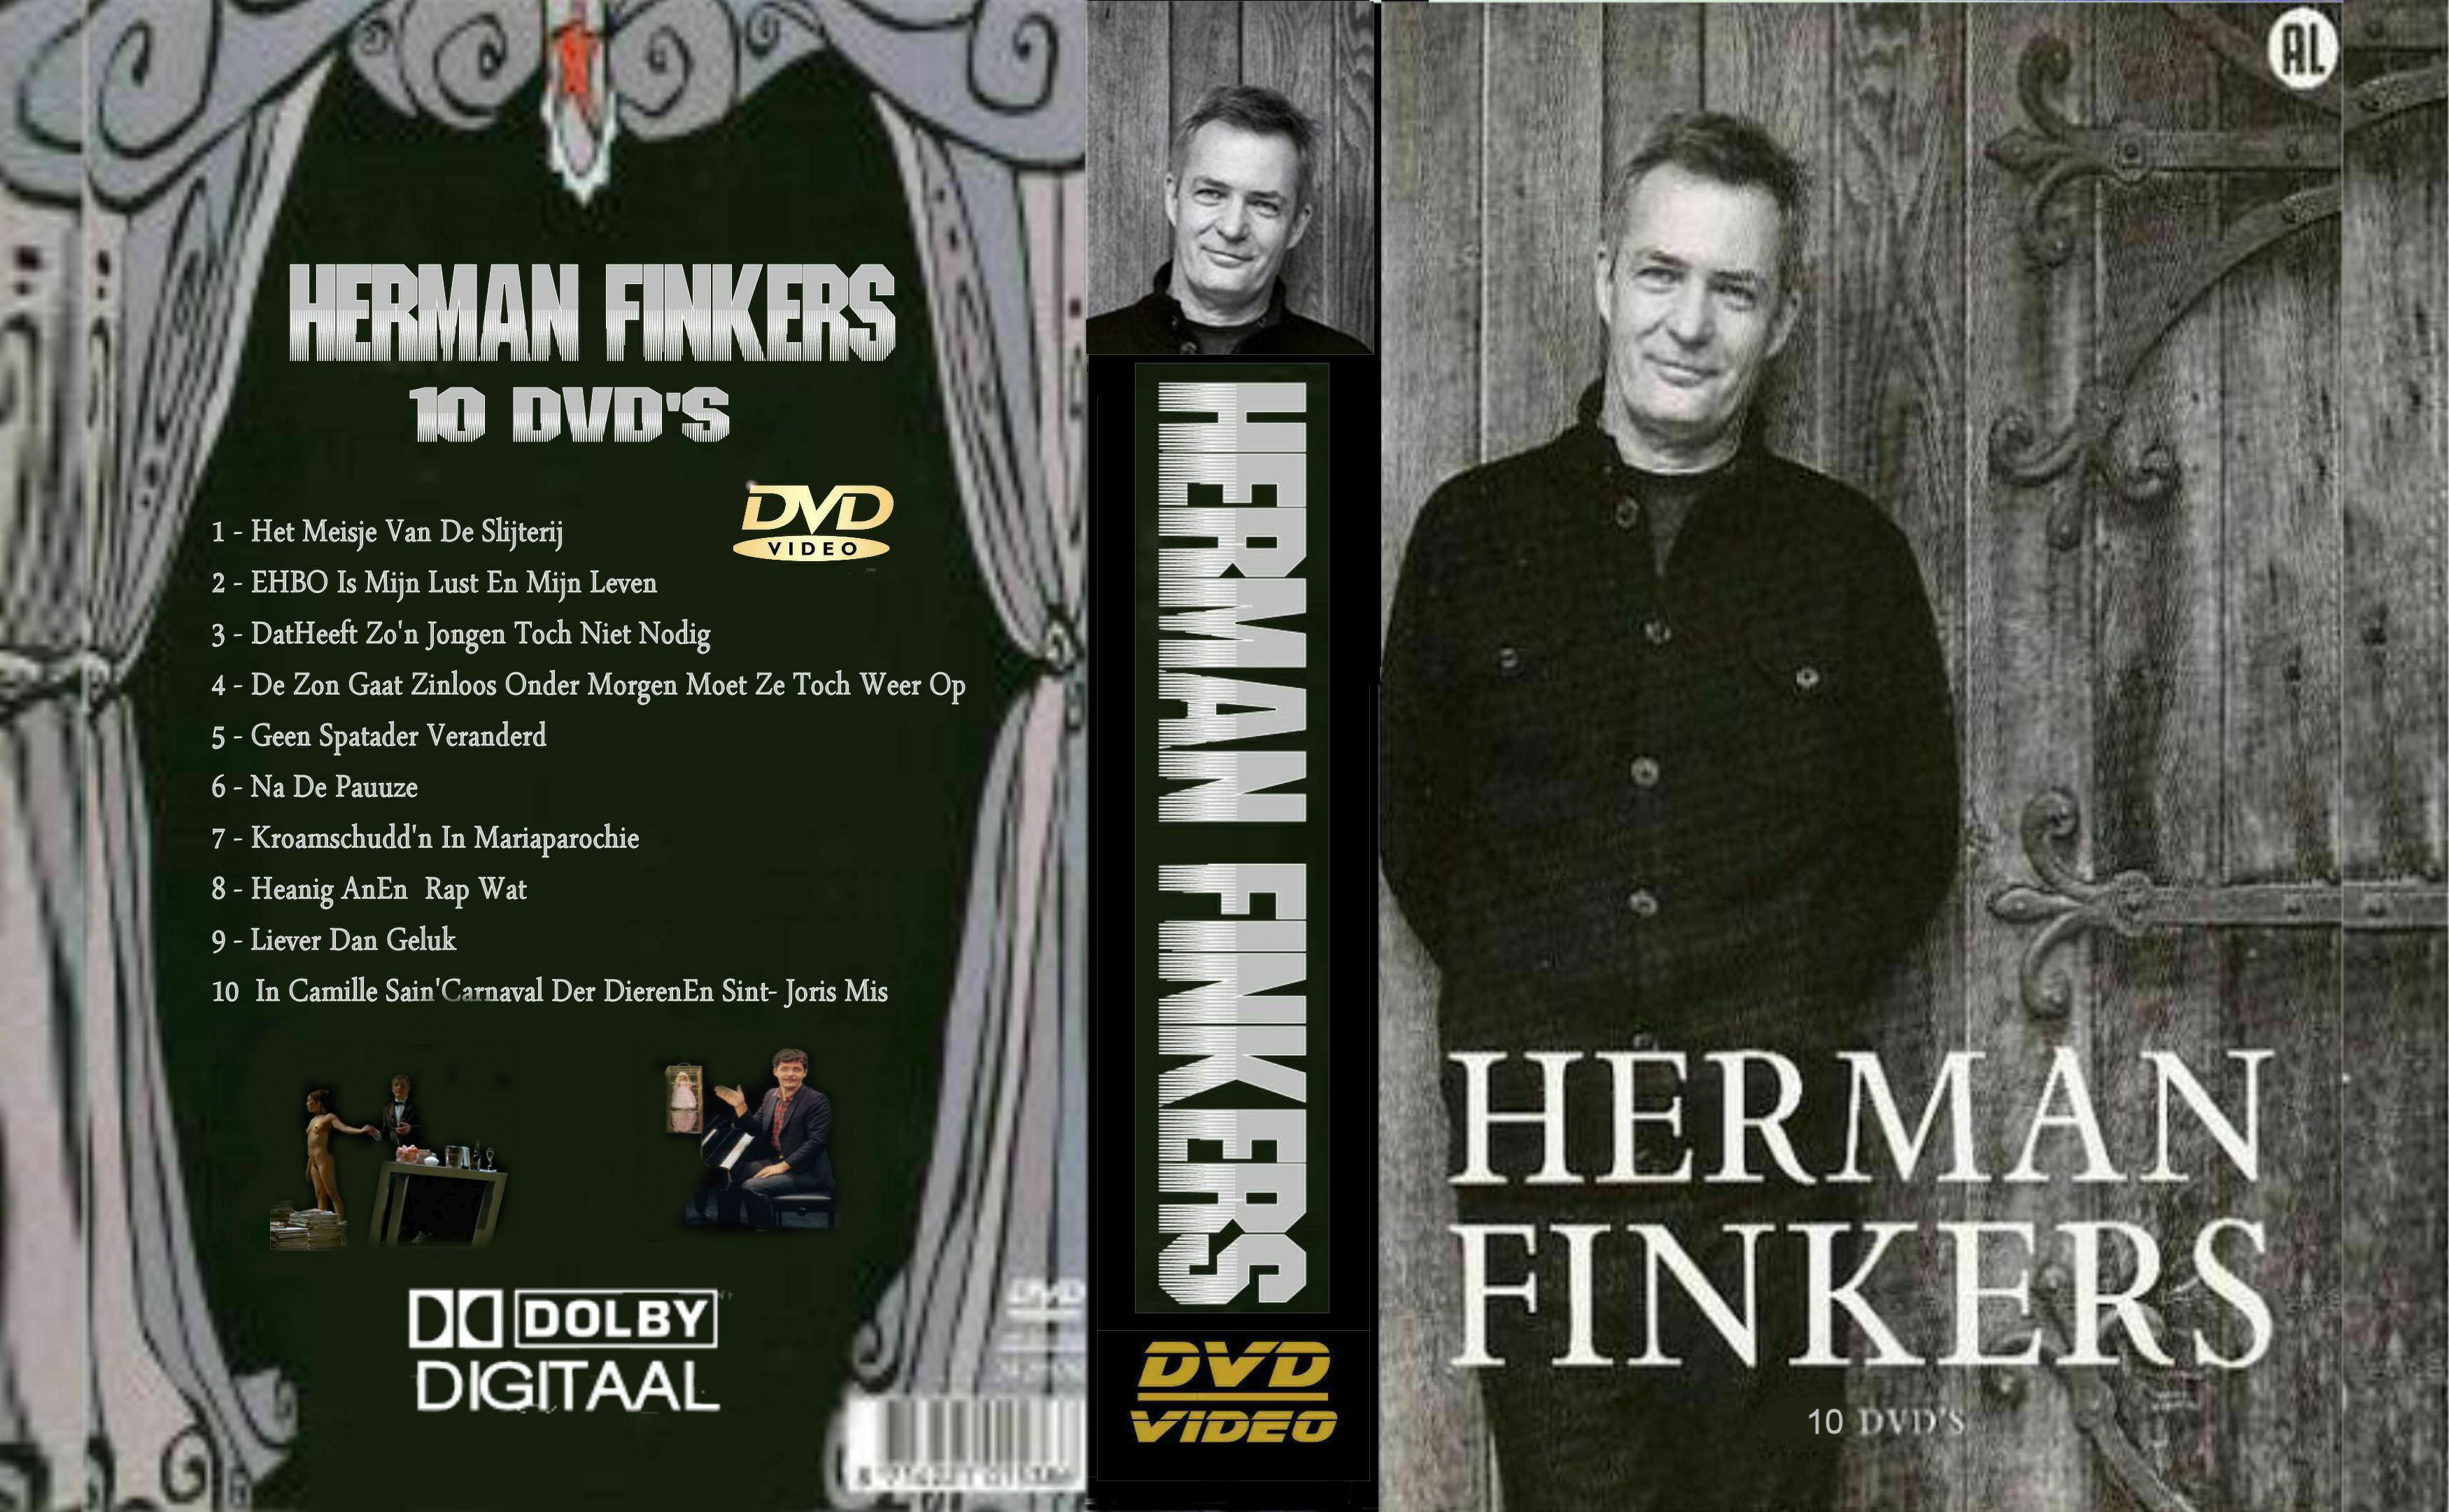 Herman Finkers Collectie DvD 2